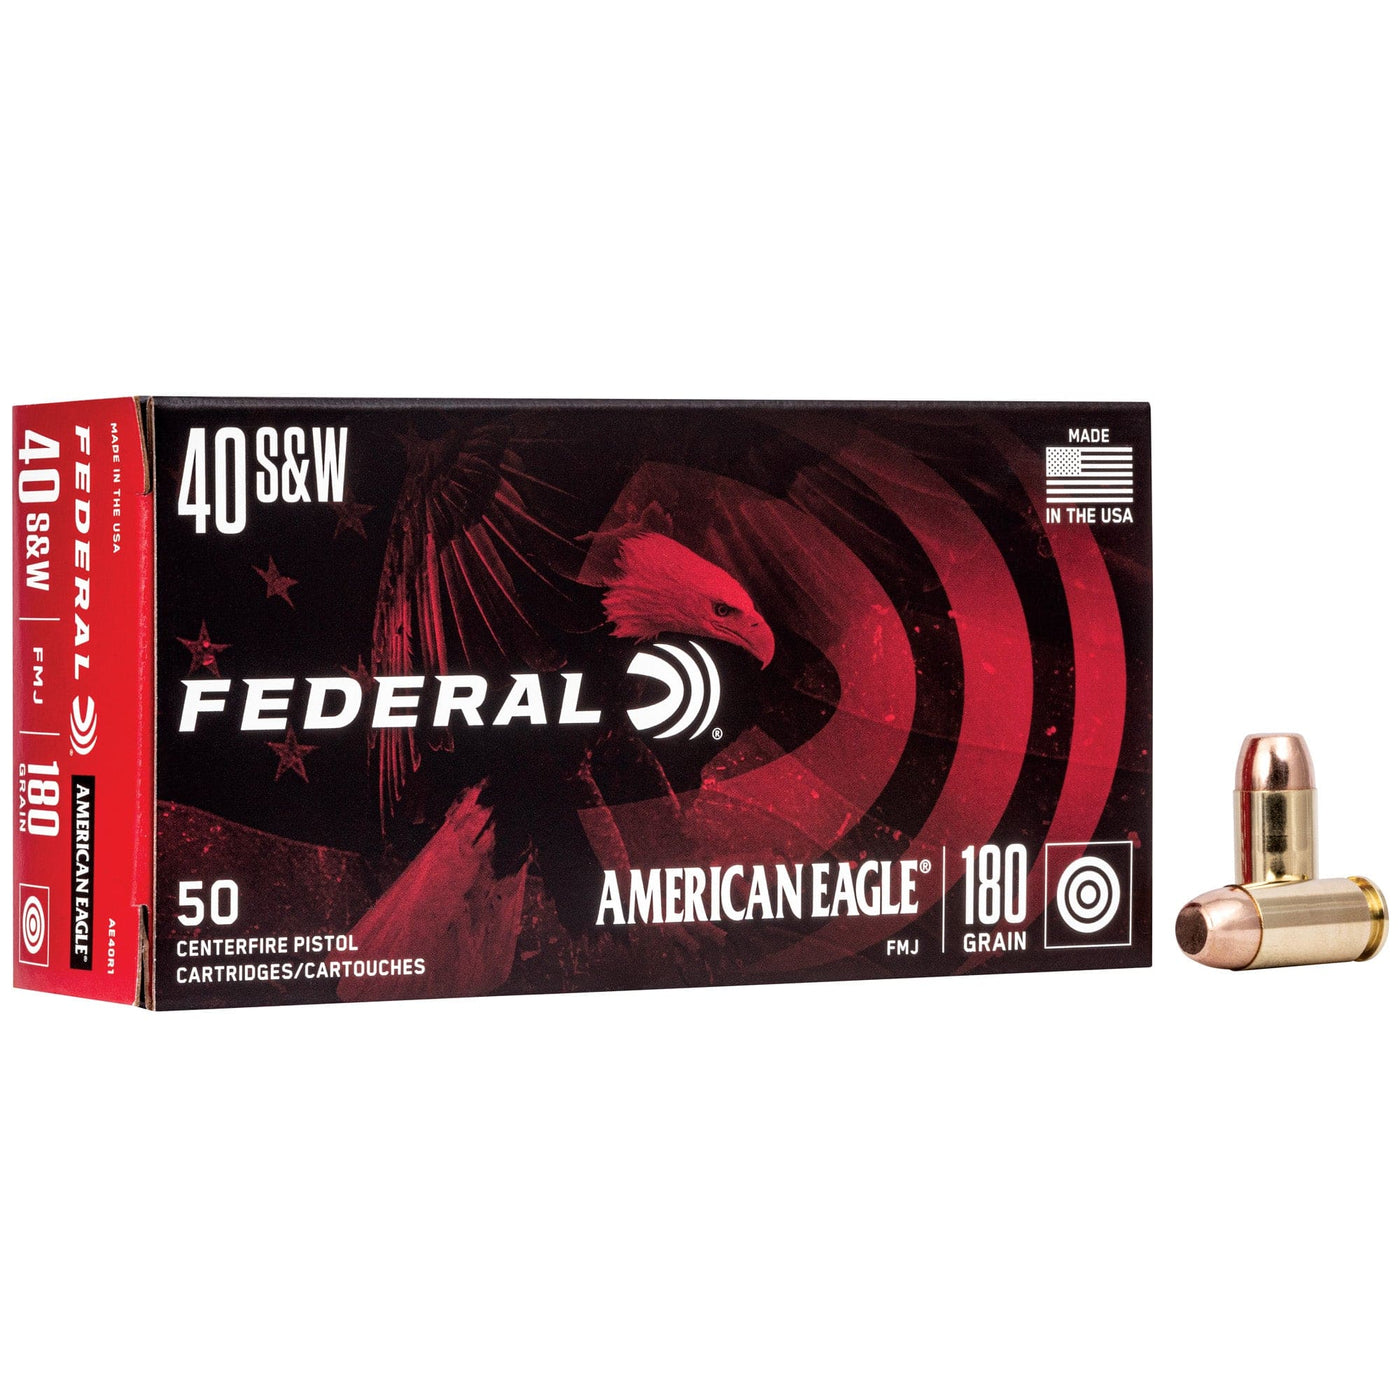 Federal Fed Am Eagle 40sw 180gr Fmj 50/1000 Ammunition